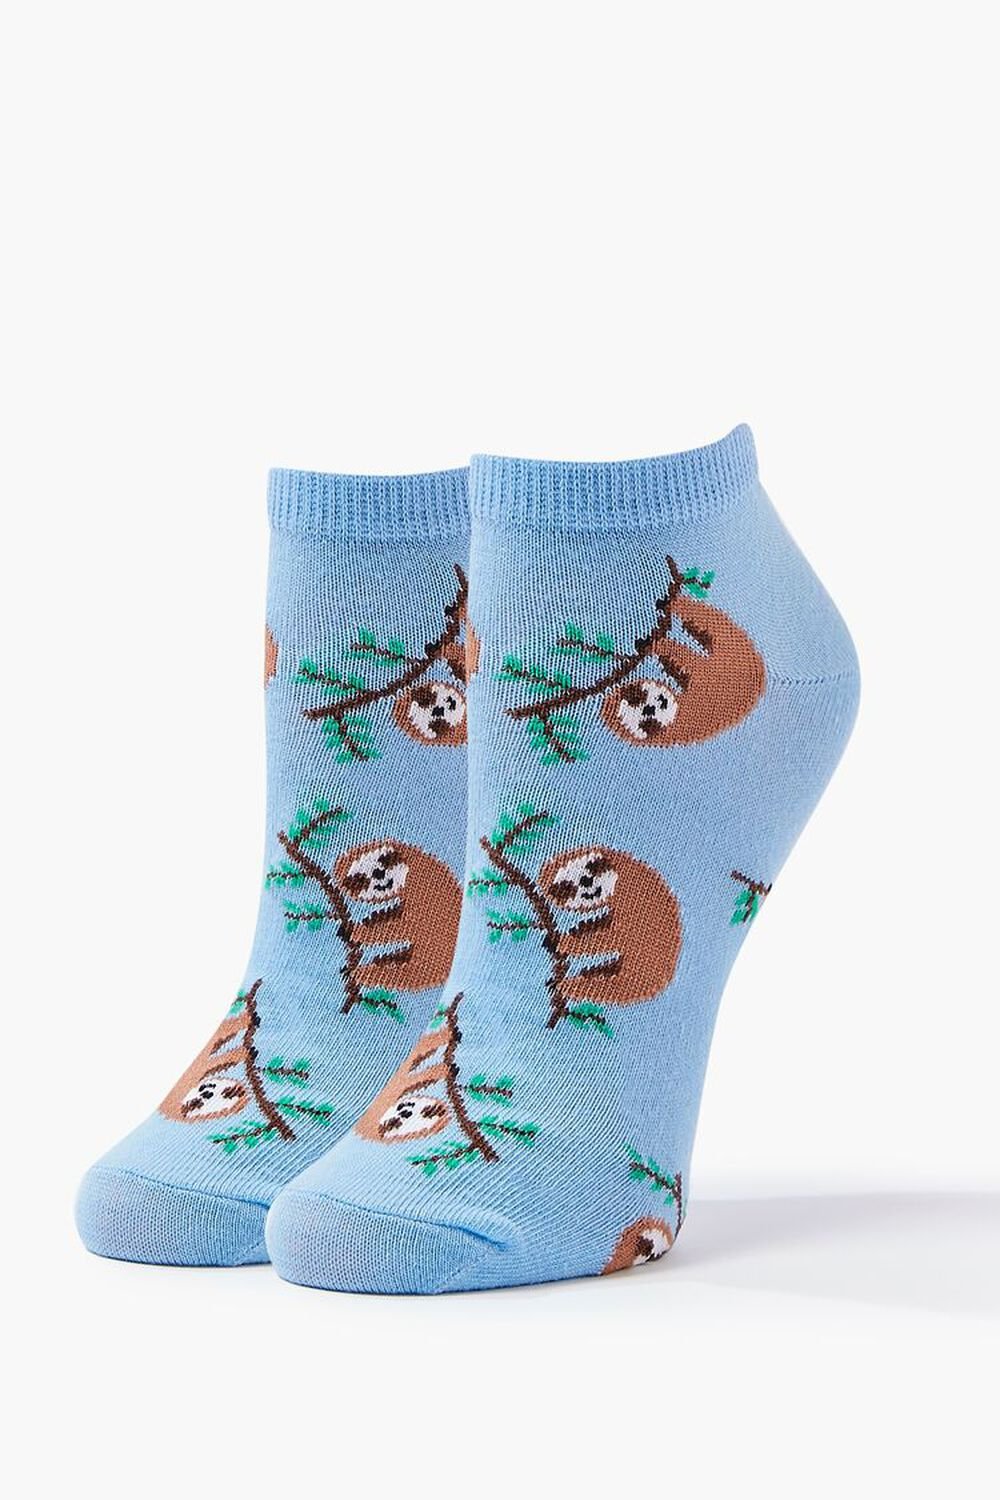 BLUE/MULTI Sloth Print Ankle Socks, image 1